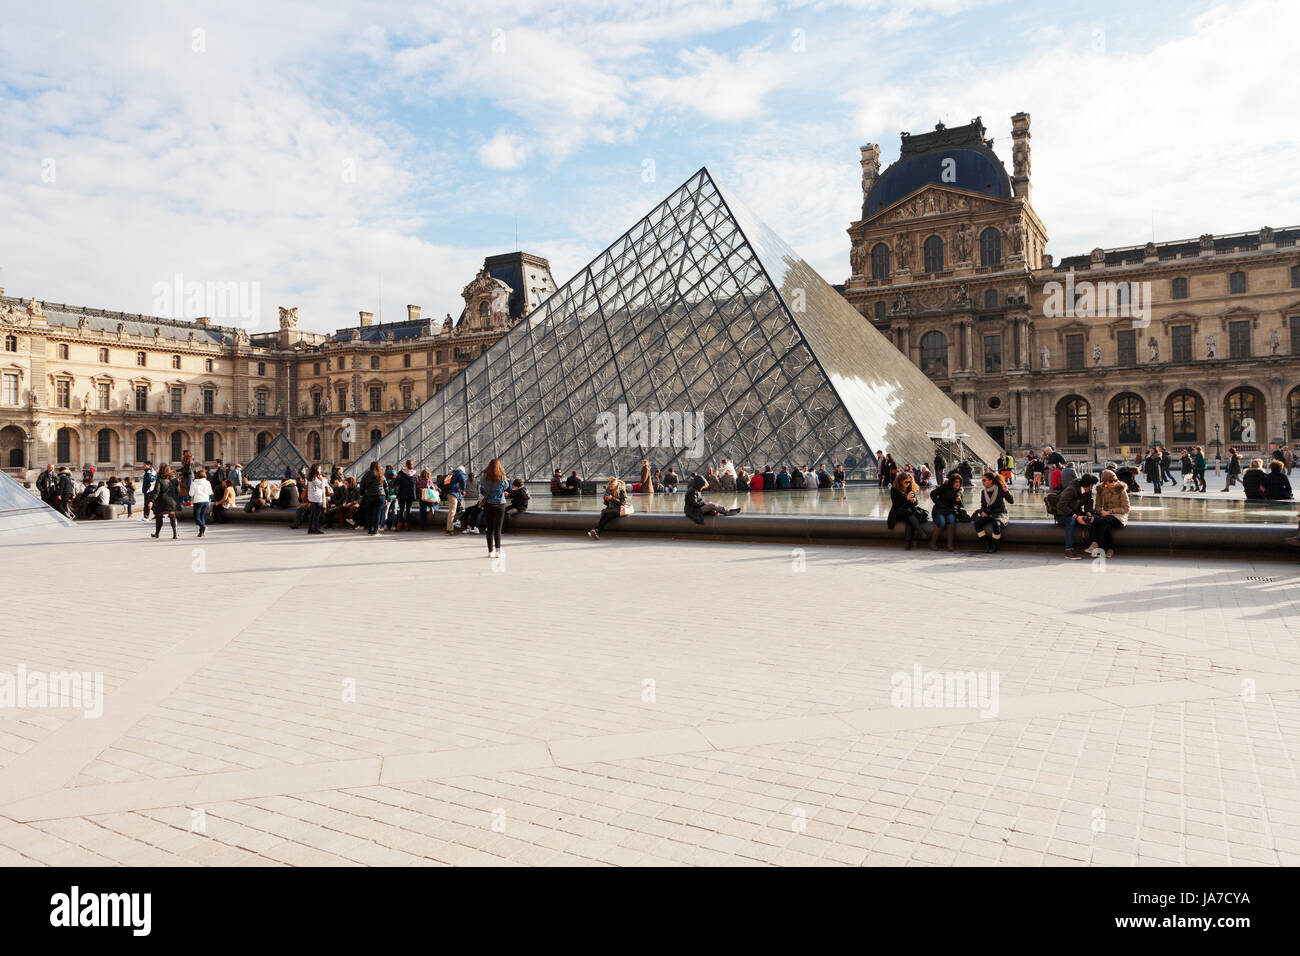 PARIS, Frankreich - März 5: Louvre-Museum und Pyramide. Die Pyramide und die unterirdische Lobby wurden am 15. Oktober 1988 in Paris, Frankreich am 5. März 2013 eingeweiht. Stockfoto